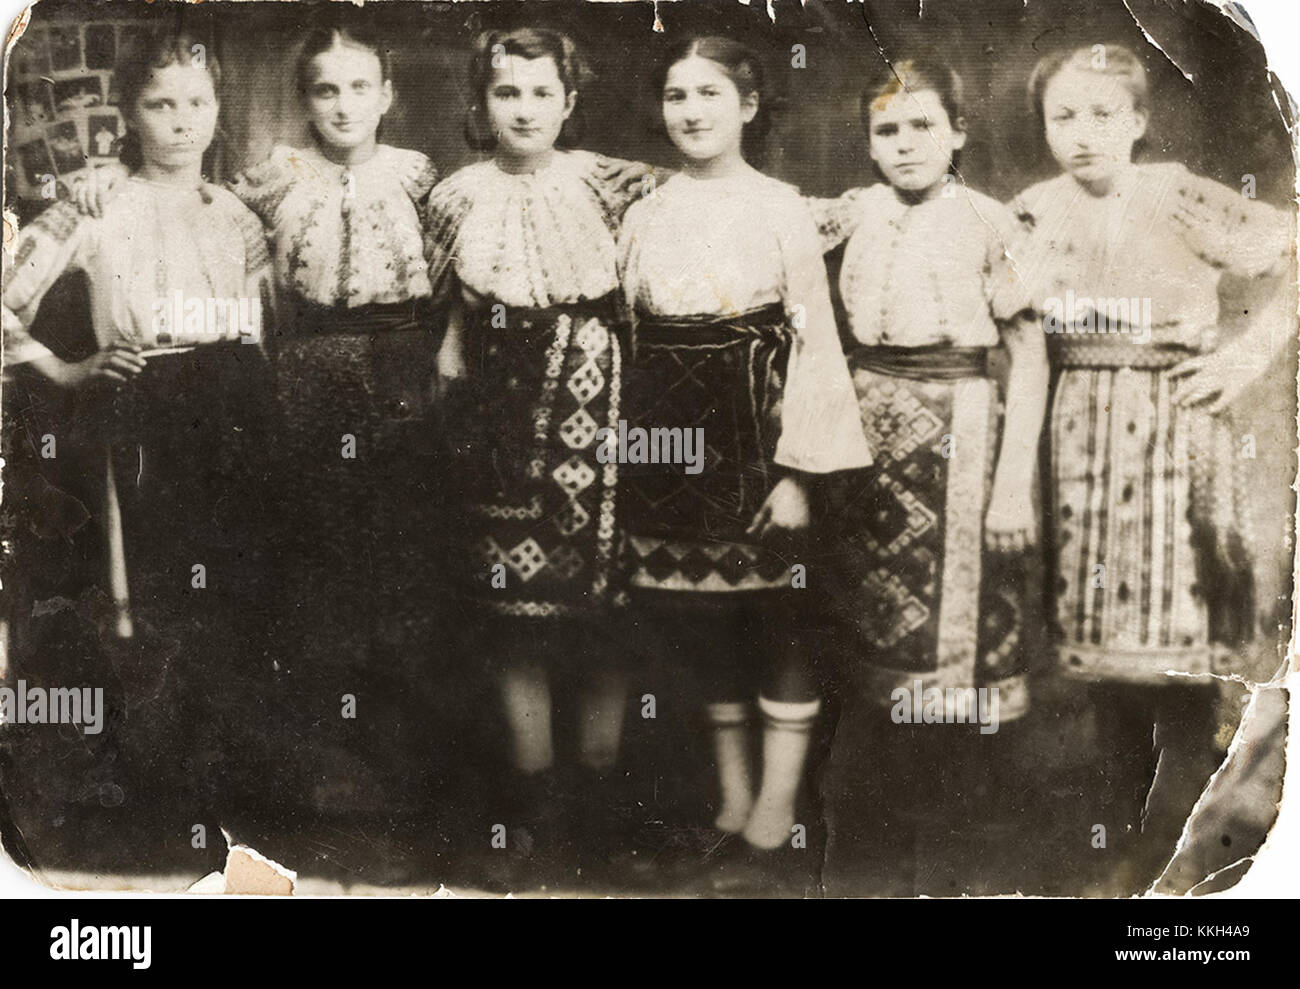 Hoinaru Ilia, Zaharia Maria, Sârbu Victoria, Aurelia Badea, Constantinescu Fla[?] si Lemnaru Lina, 1944  din colecția personală Anca Danilescu Ca 20140216 (12565623764) Stock Photo